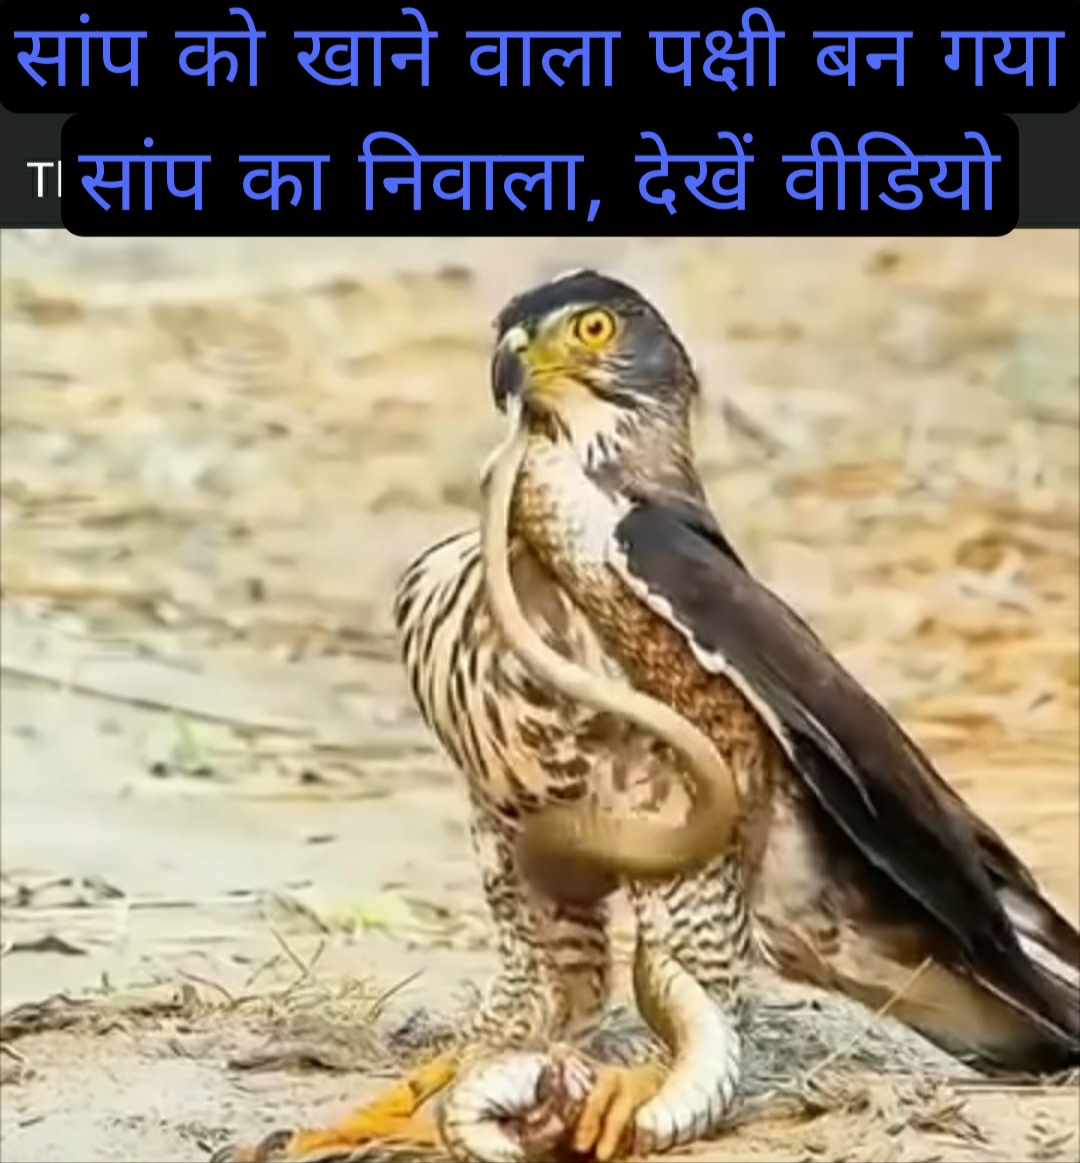 Forest life : सांप को खाने वाला पक्षी, जब बन गया सांप का निवाला , देखें वीडियो 